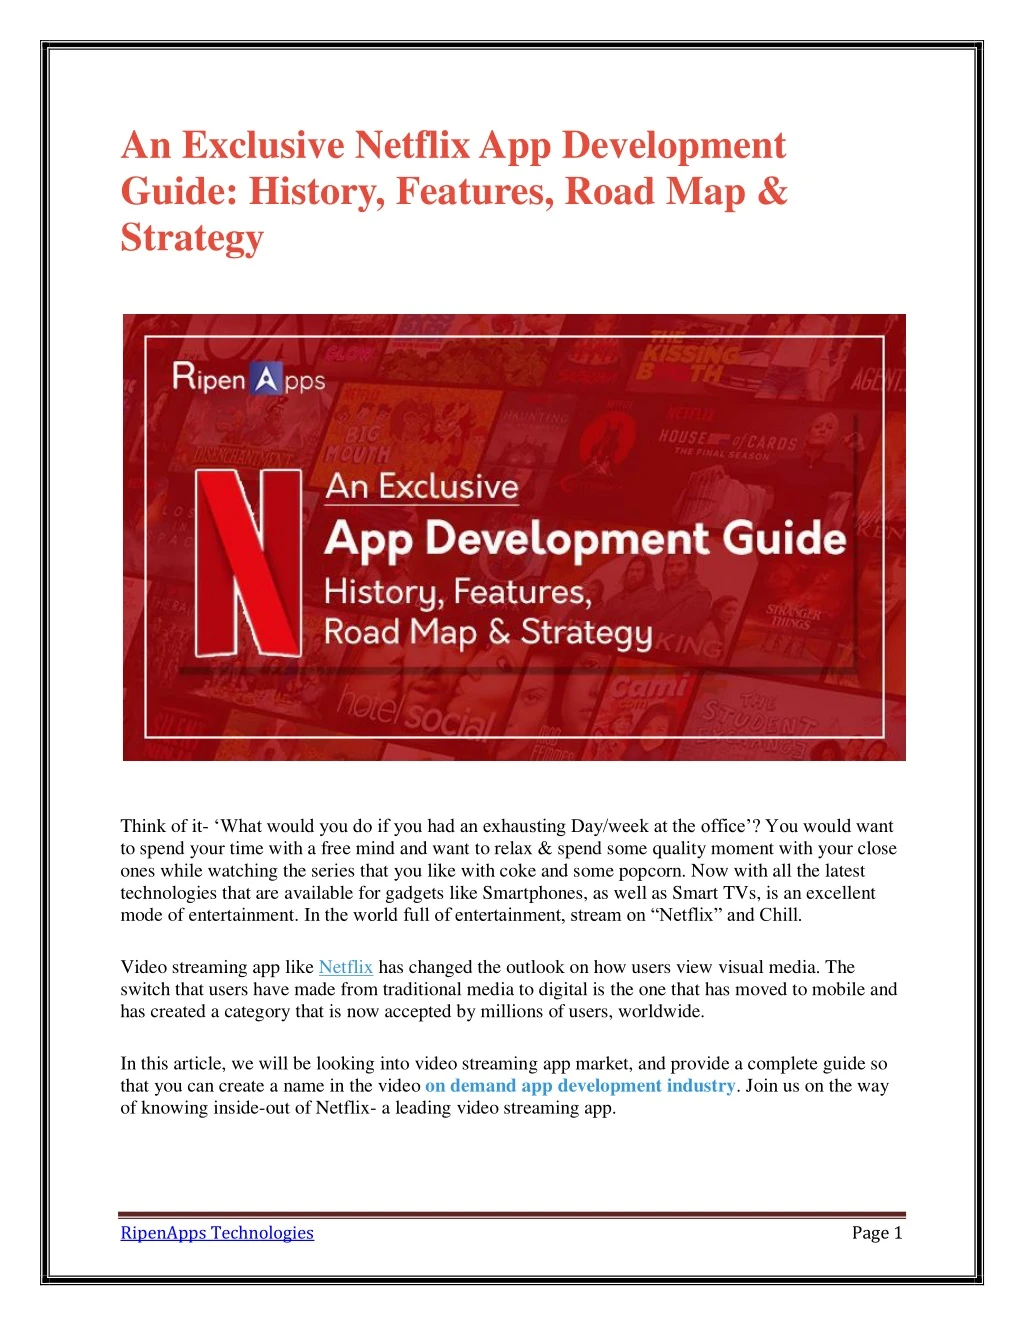 an exclusive netflix app development guide